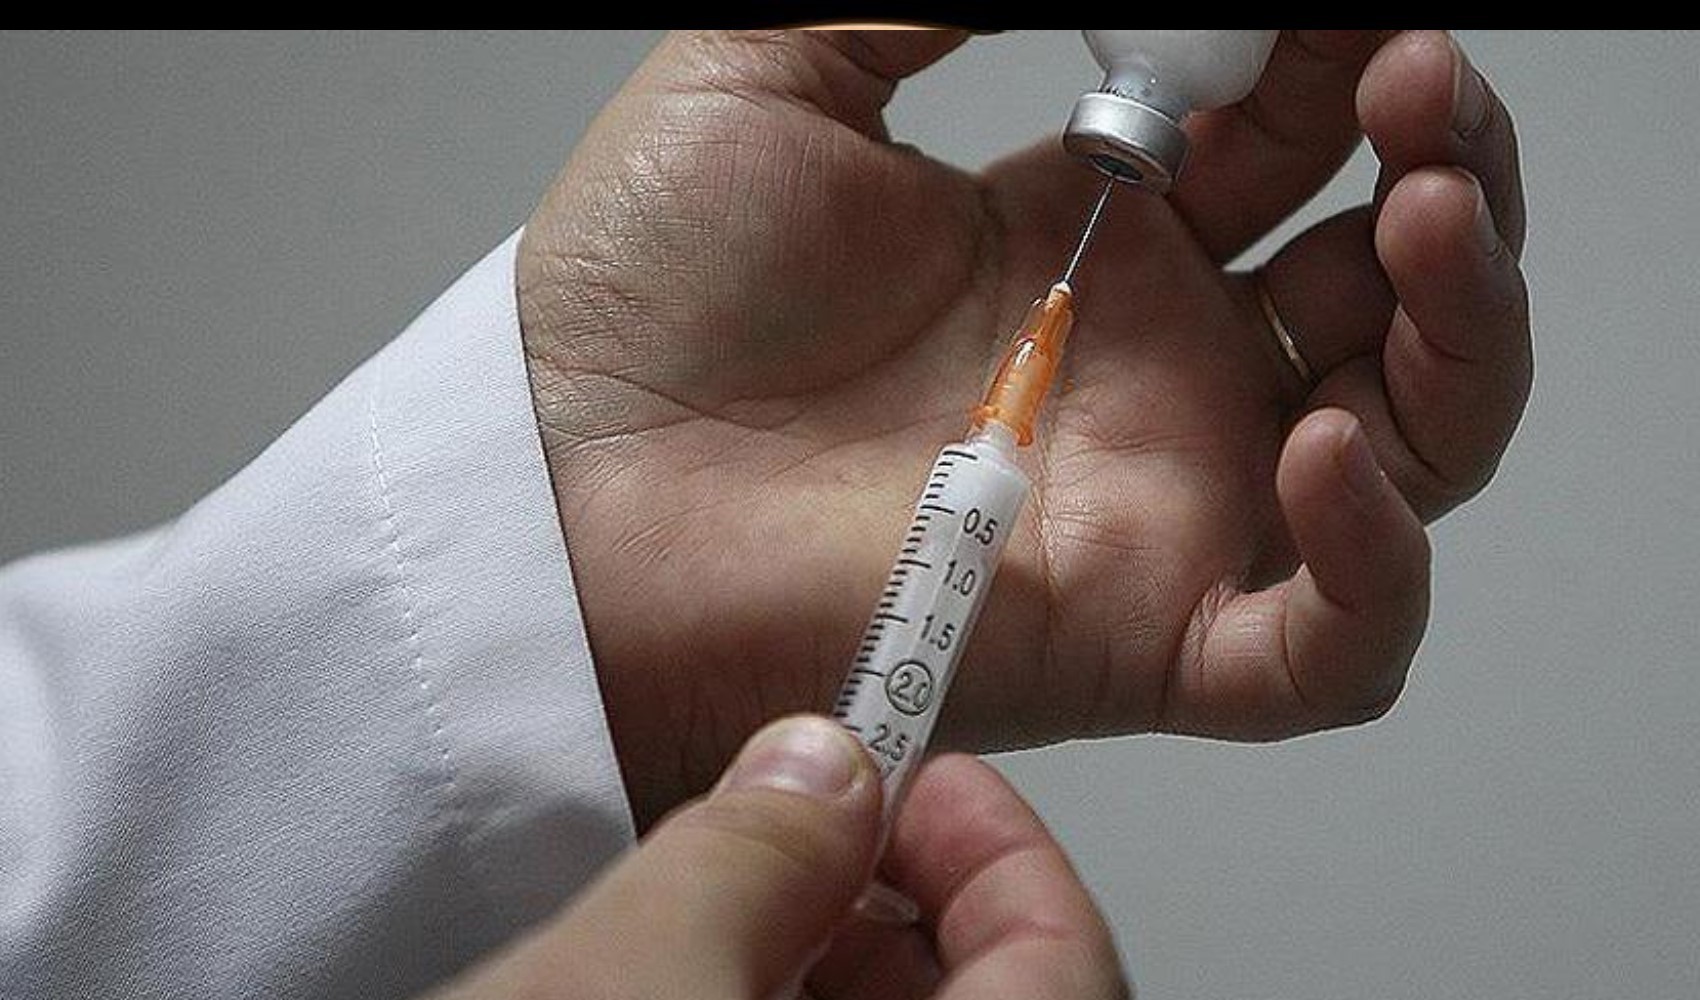 Mahkemeden HPV aşısı kararı: Hukuka aykırı bulundu